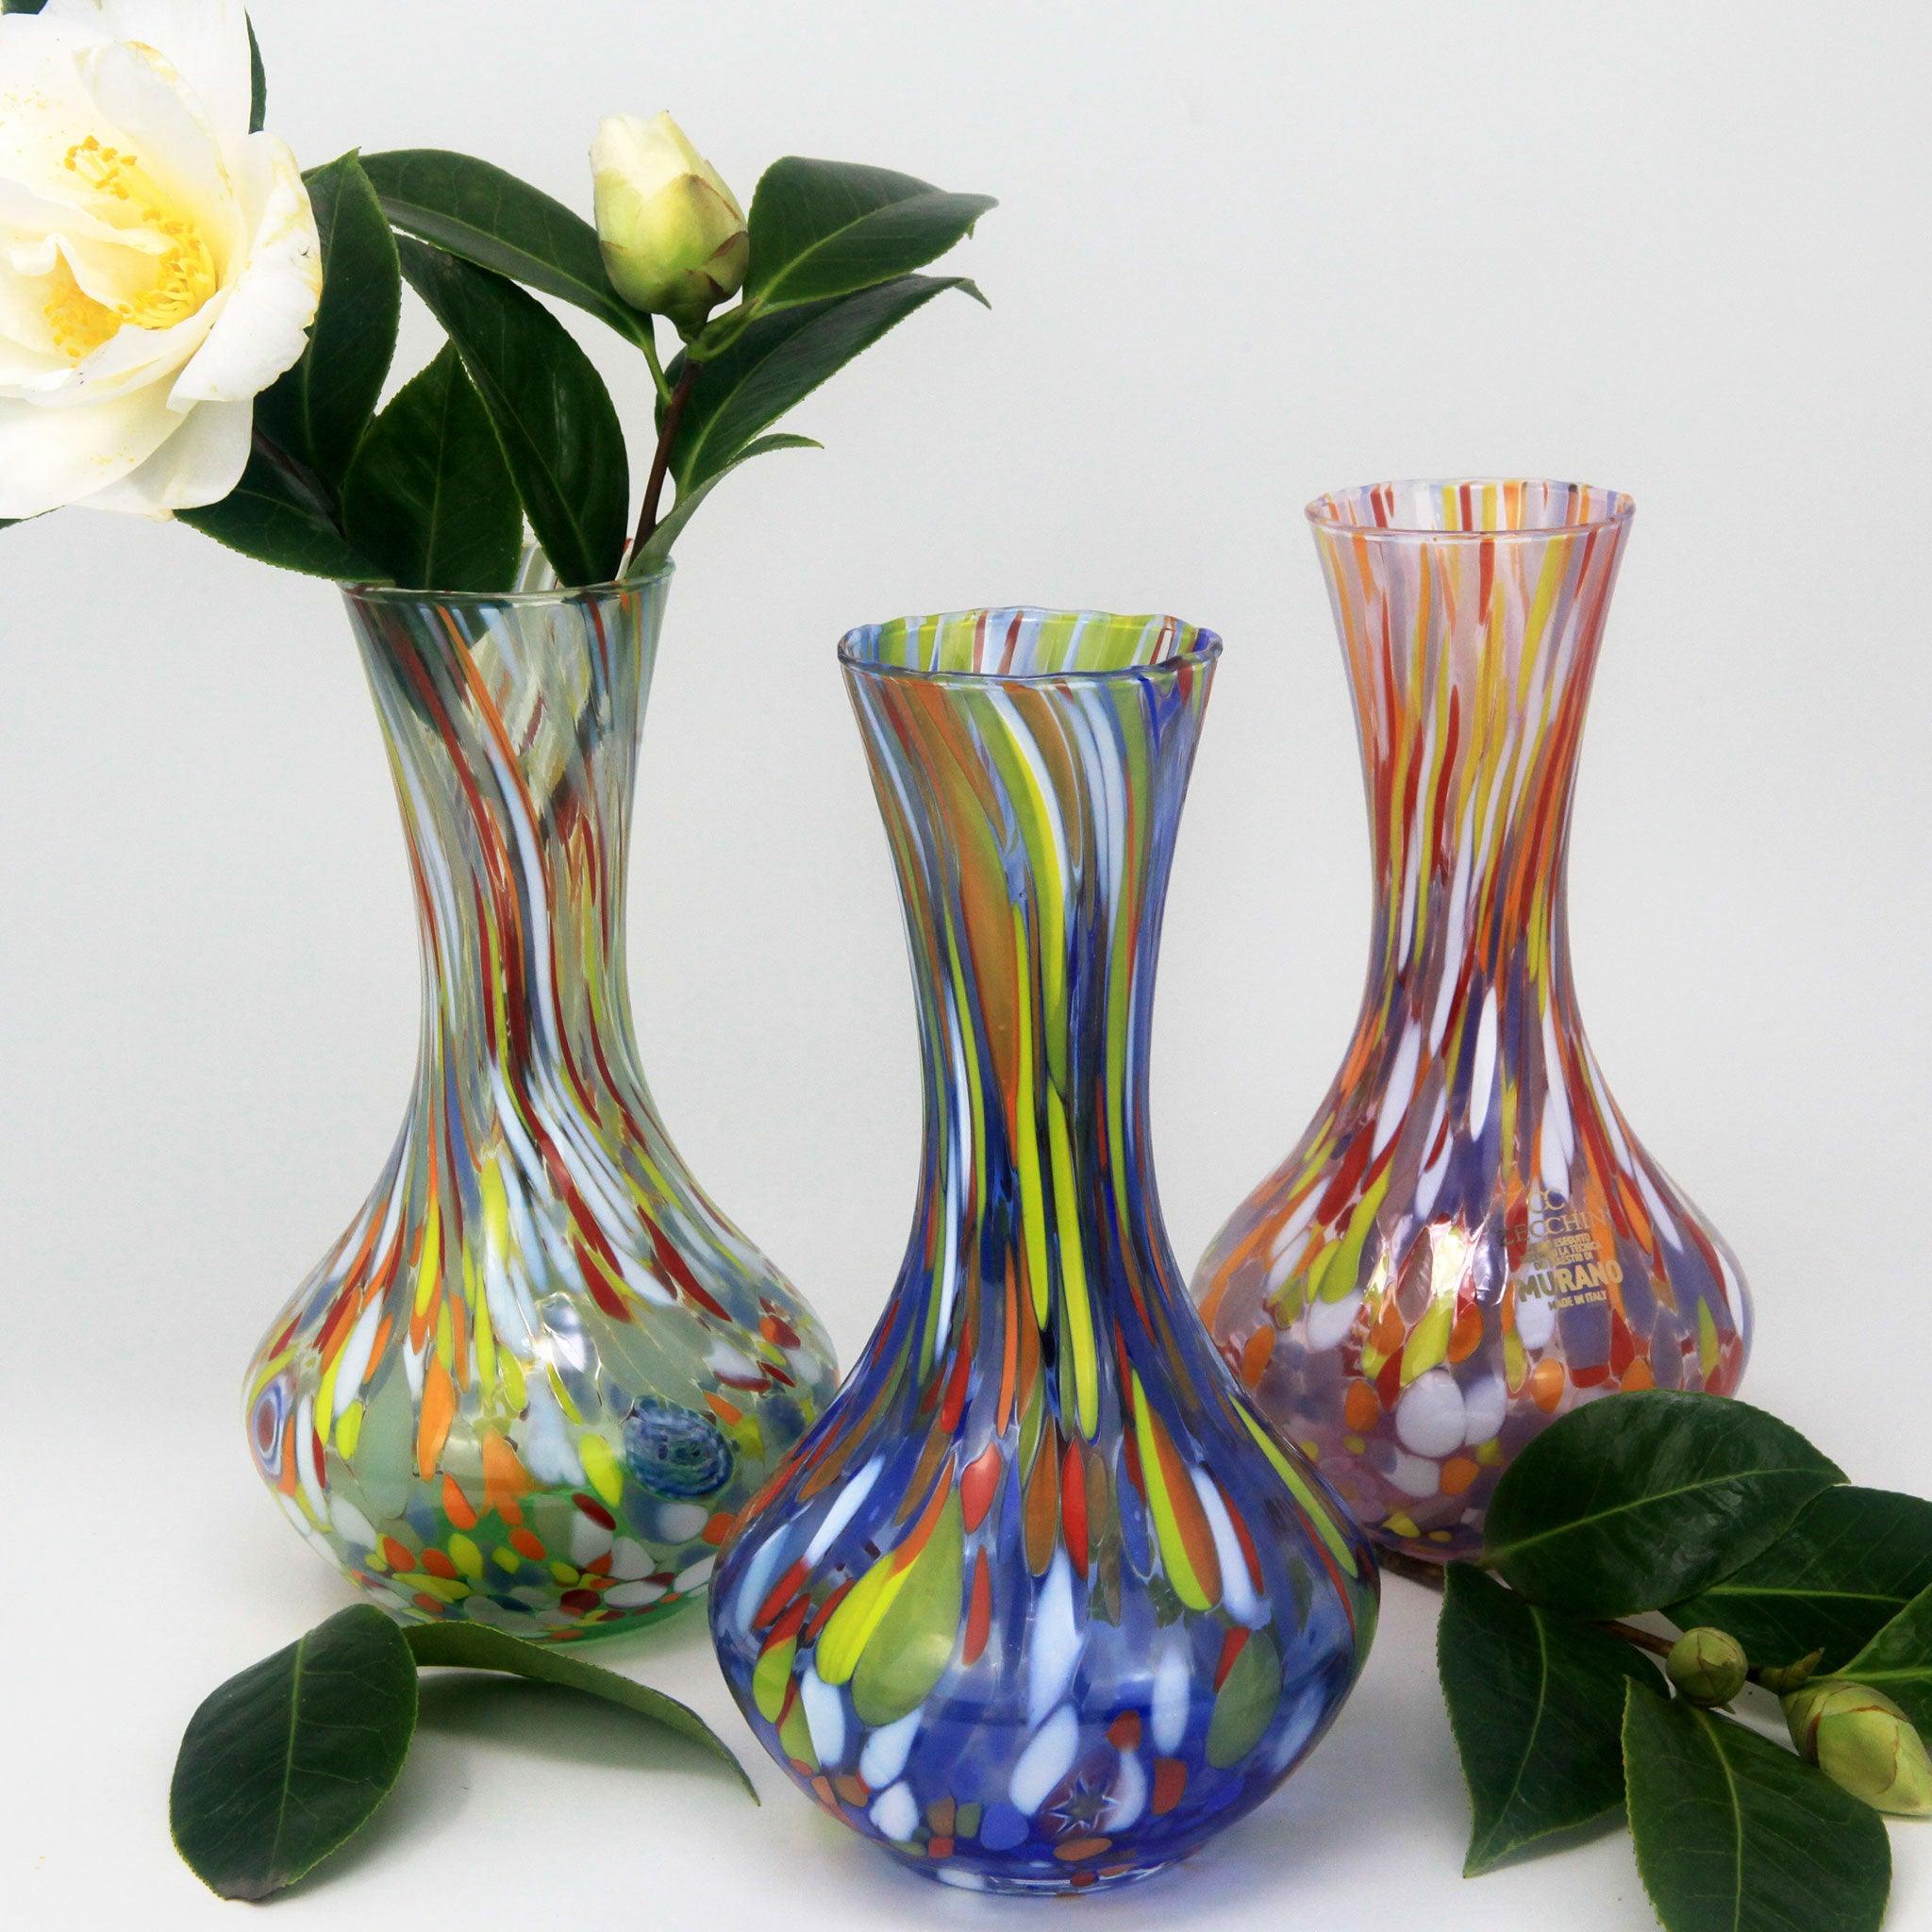 Handbag-Shaped Flower Vases  Luxury vase, Flower vases, Ceramic flowers